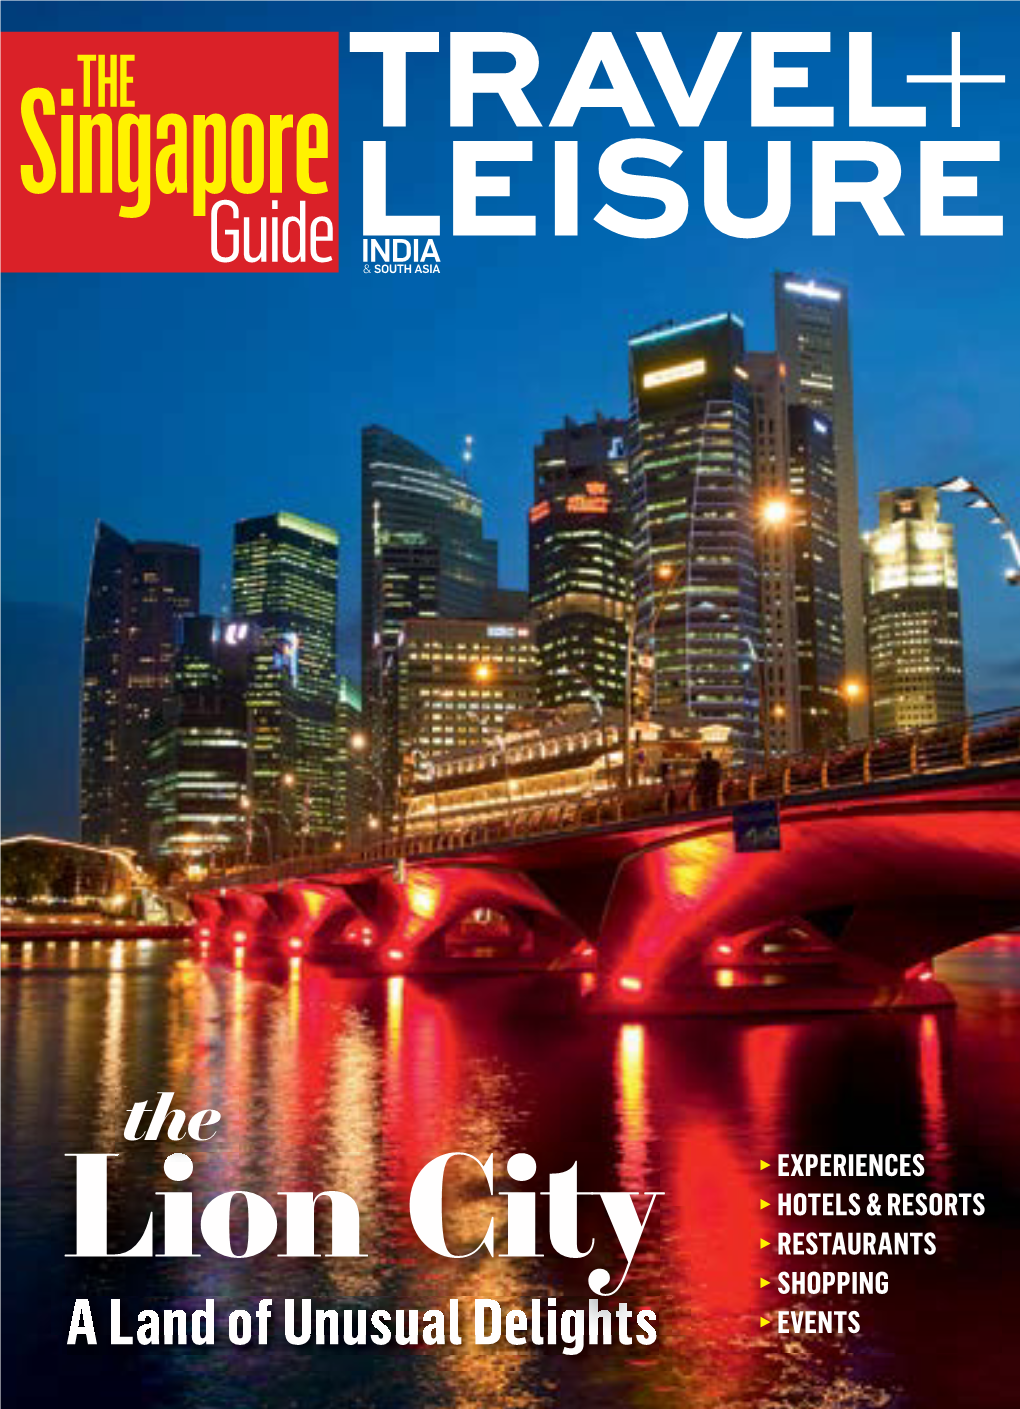 Singaporethe Guide